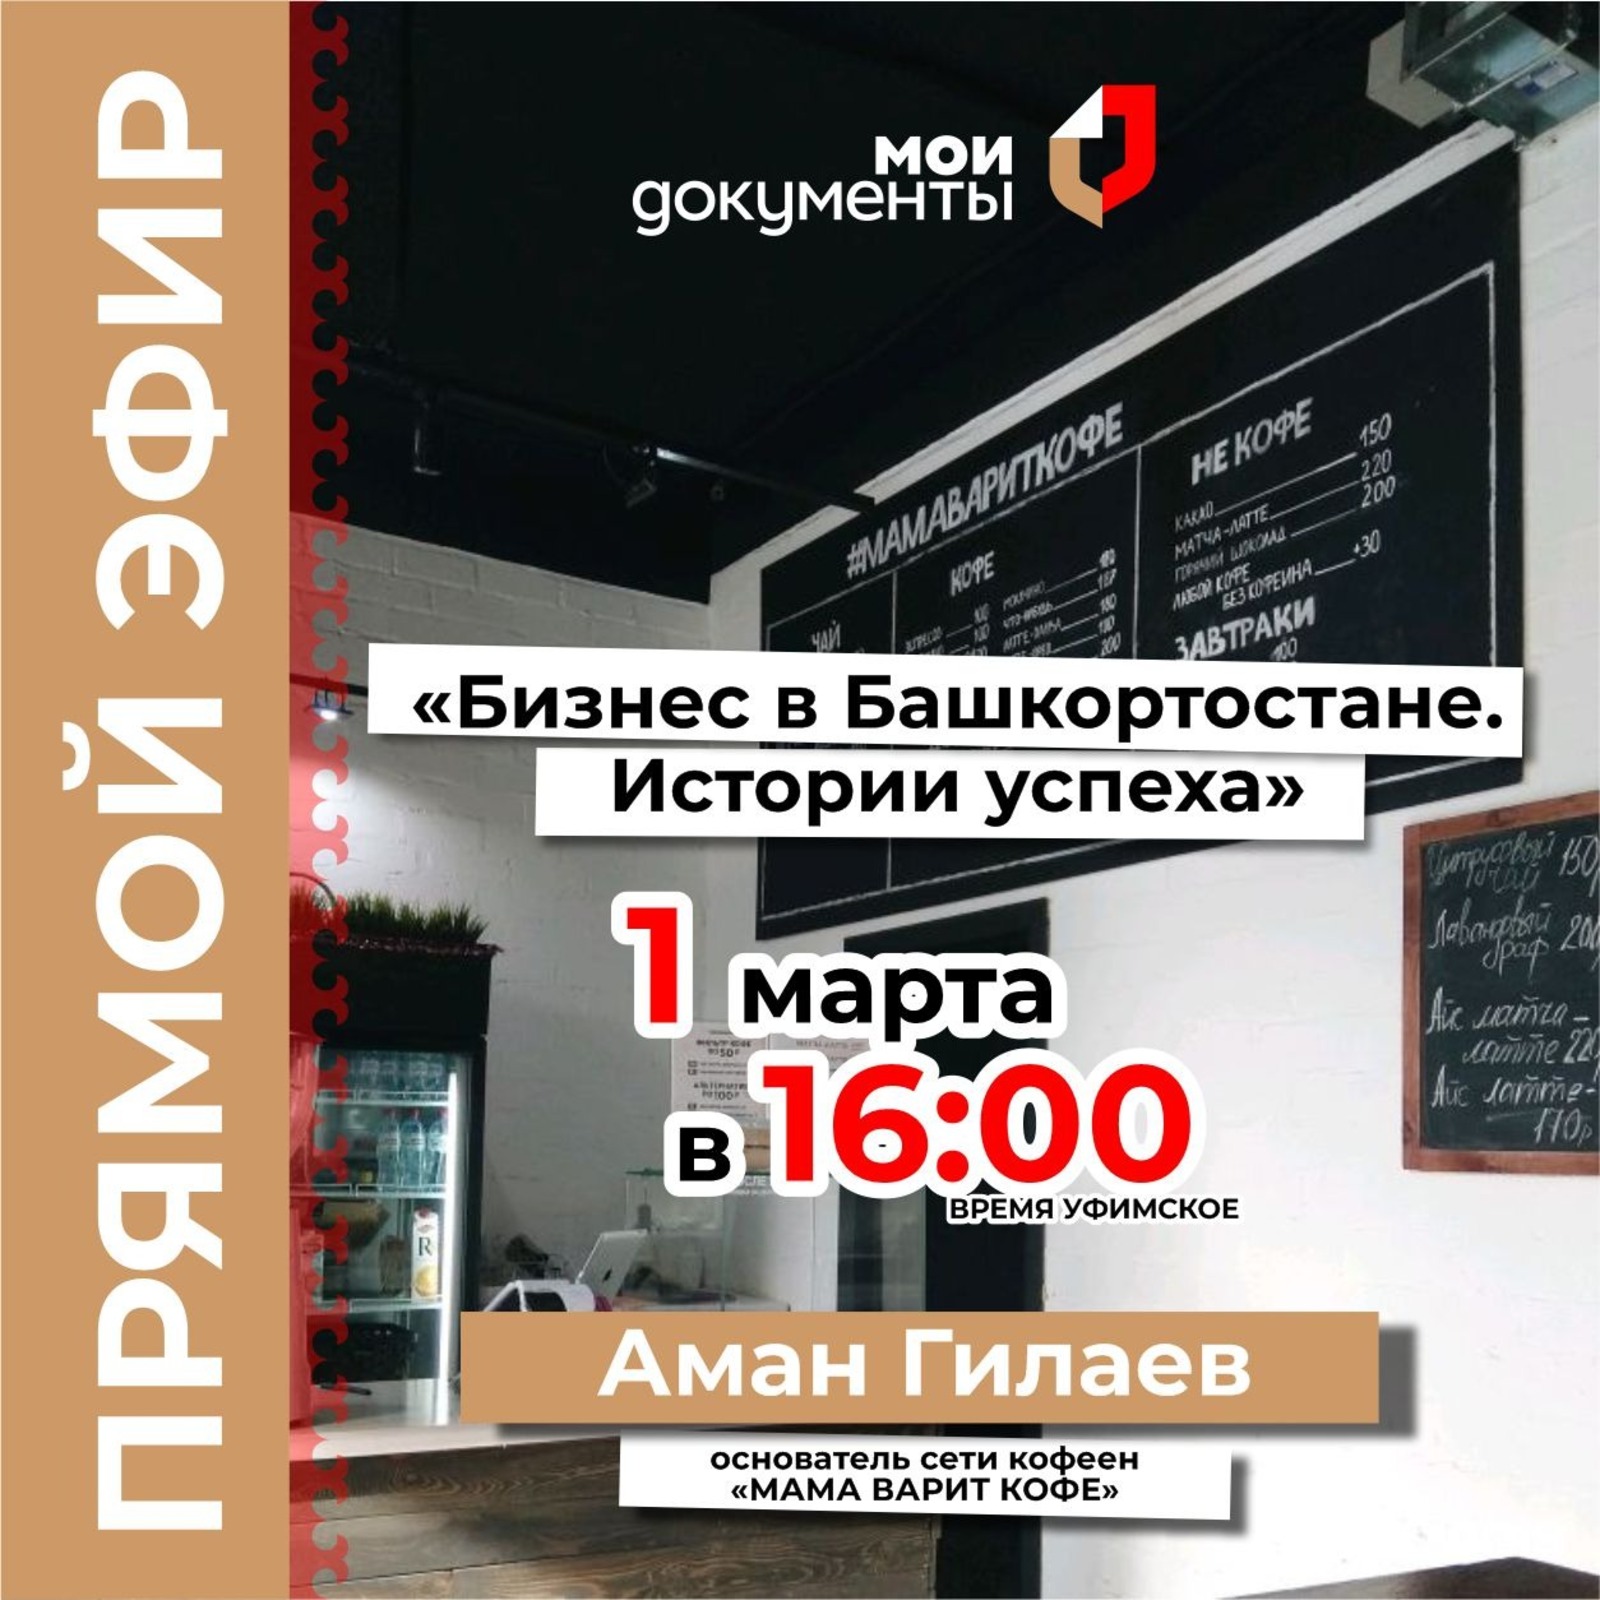 МФЦ «Мои Документы» проведет прямой эфир для предпринимателей в рамках проекта «Бизнес в Башкортостане. Истории успеха»